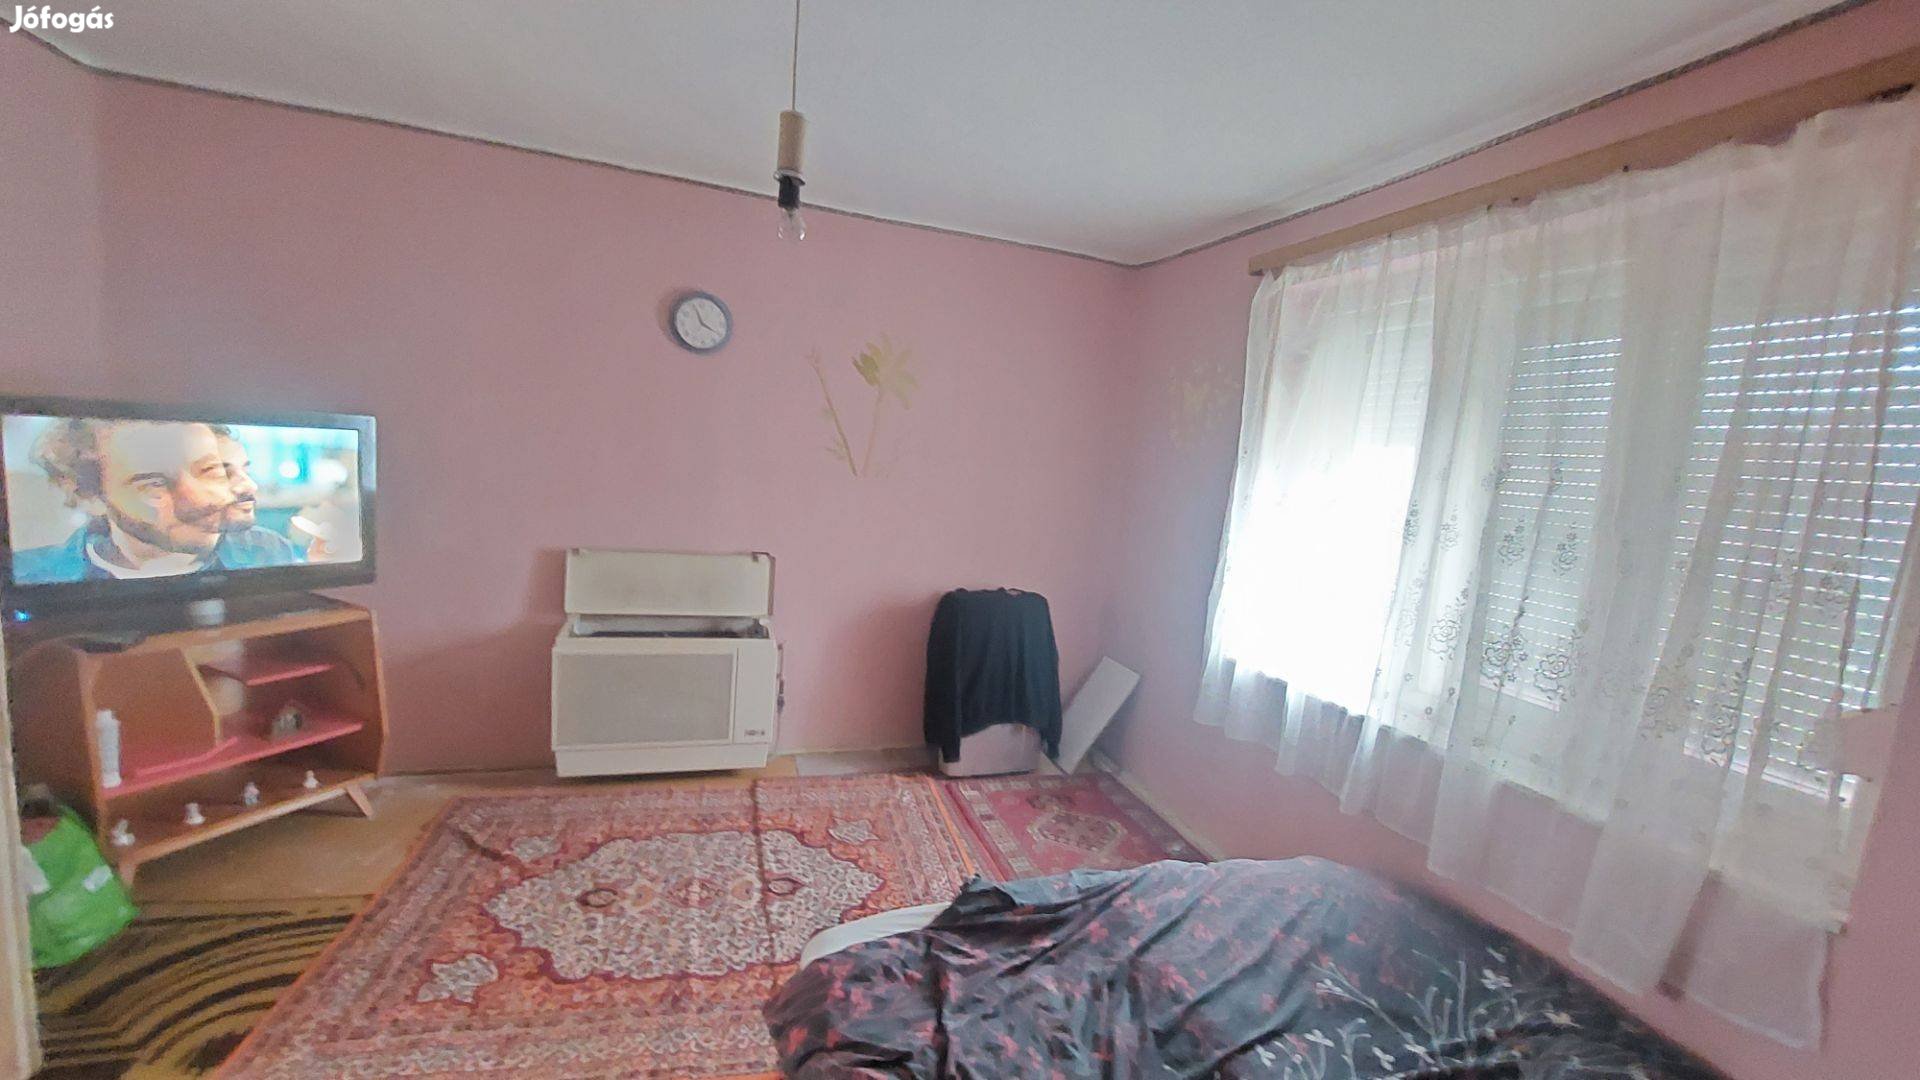 Csikérián családi ház eladó